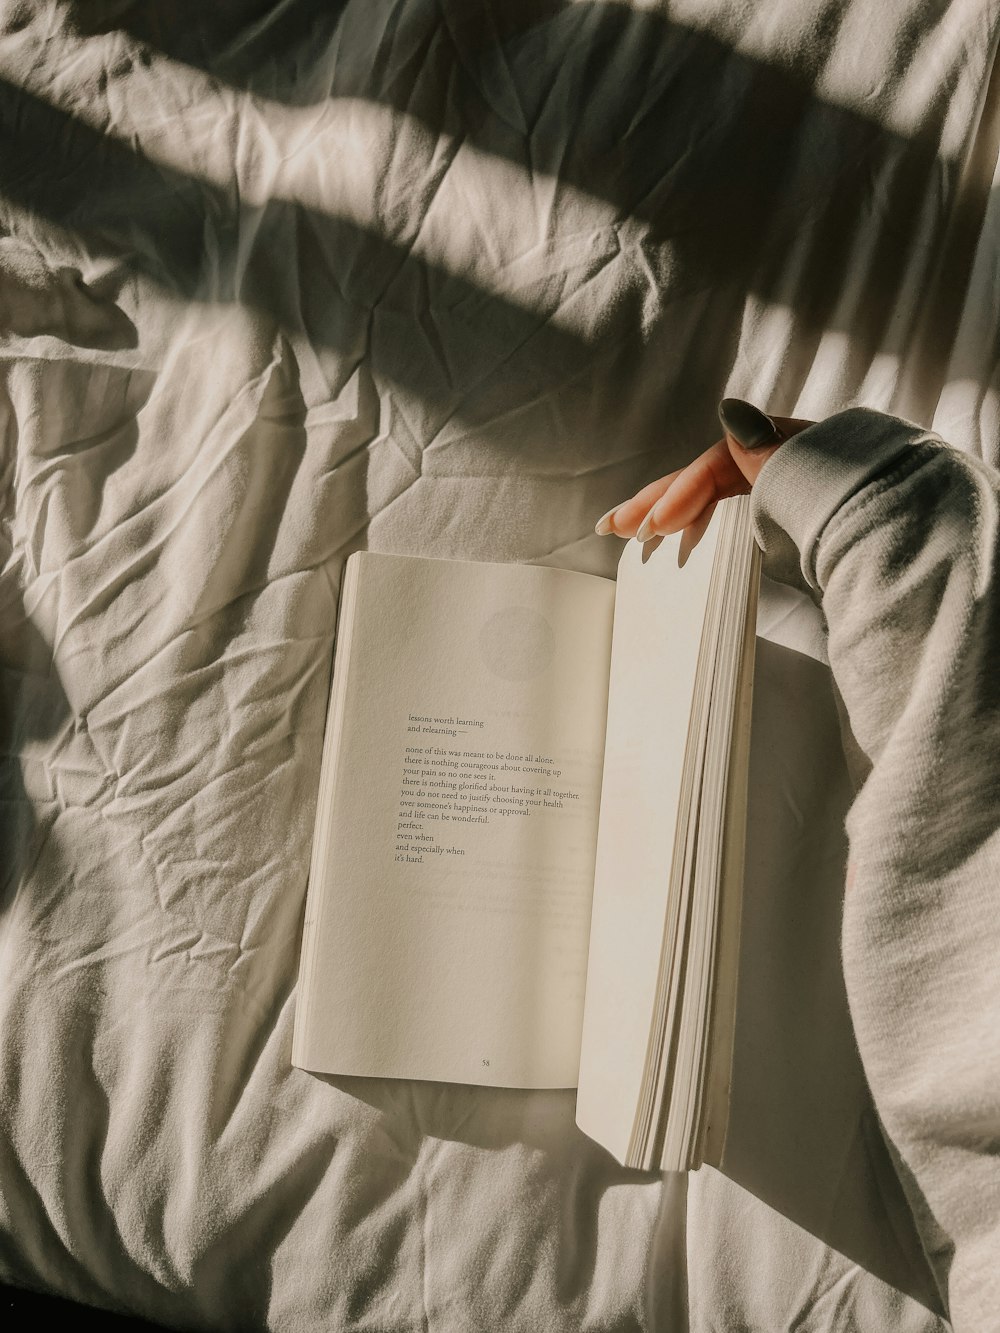 Eine Person liest ein Buch auf einem Bett